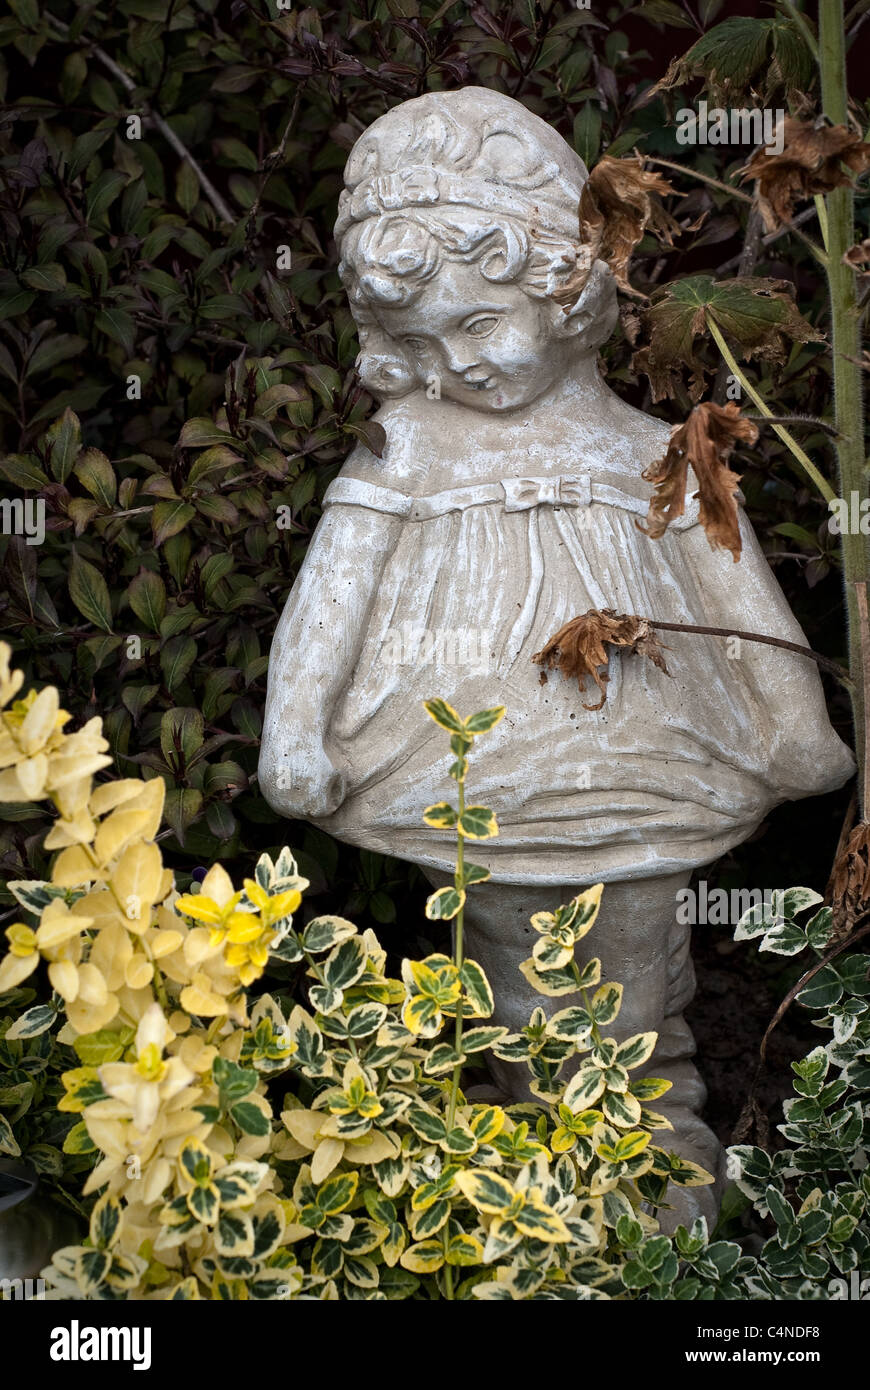 Una estatua de piedra de una joven que se encuentra entre el follaje de un descuidado jardín Foto de stock